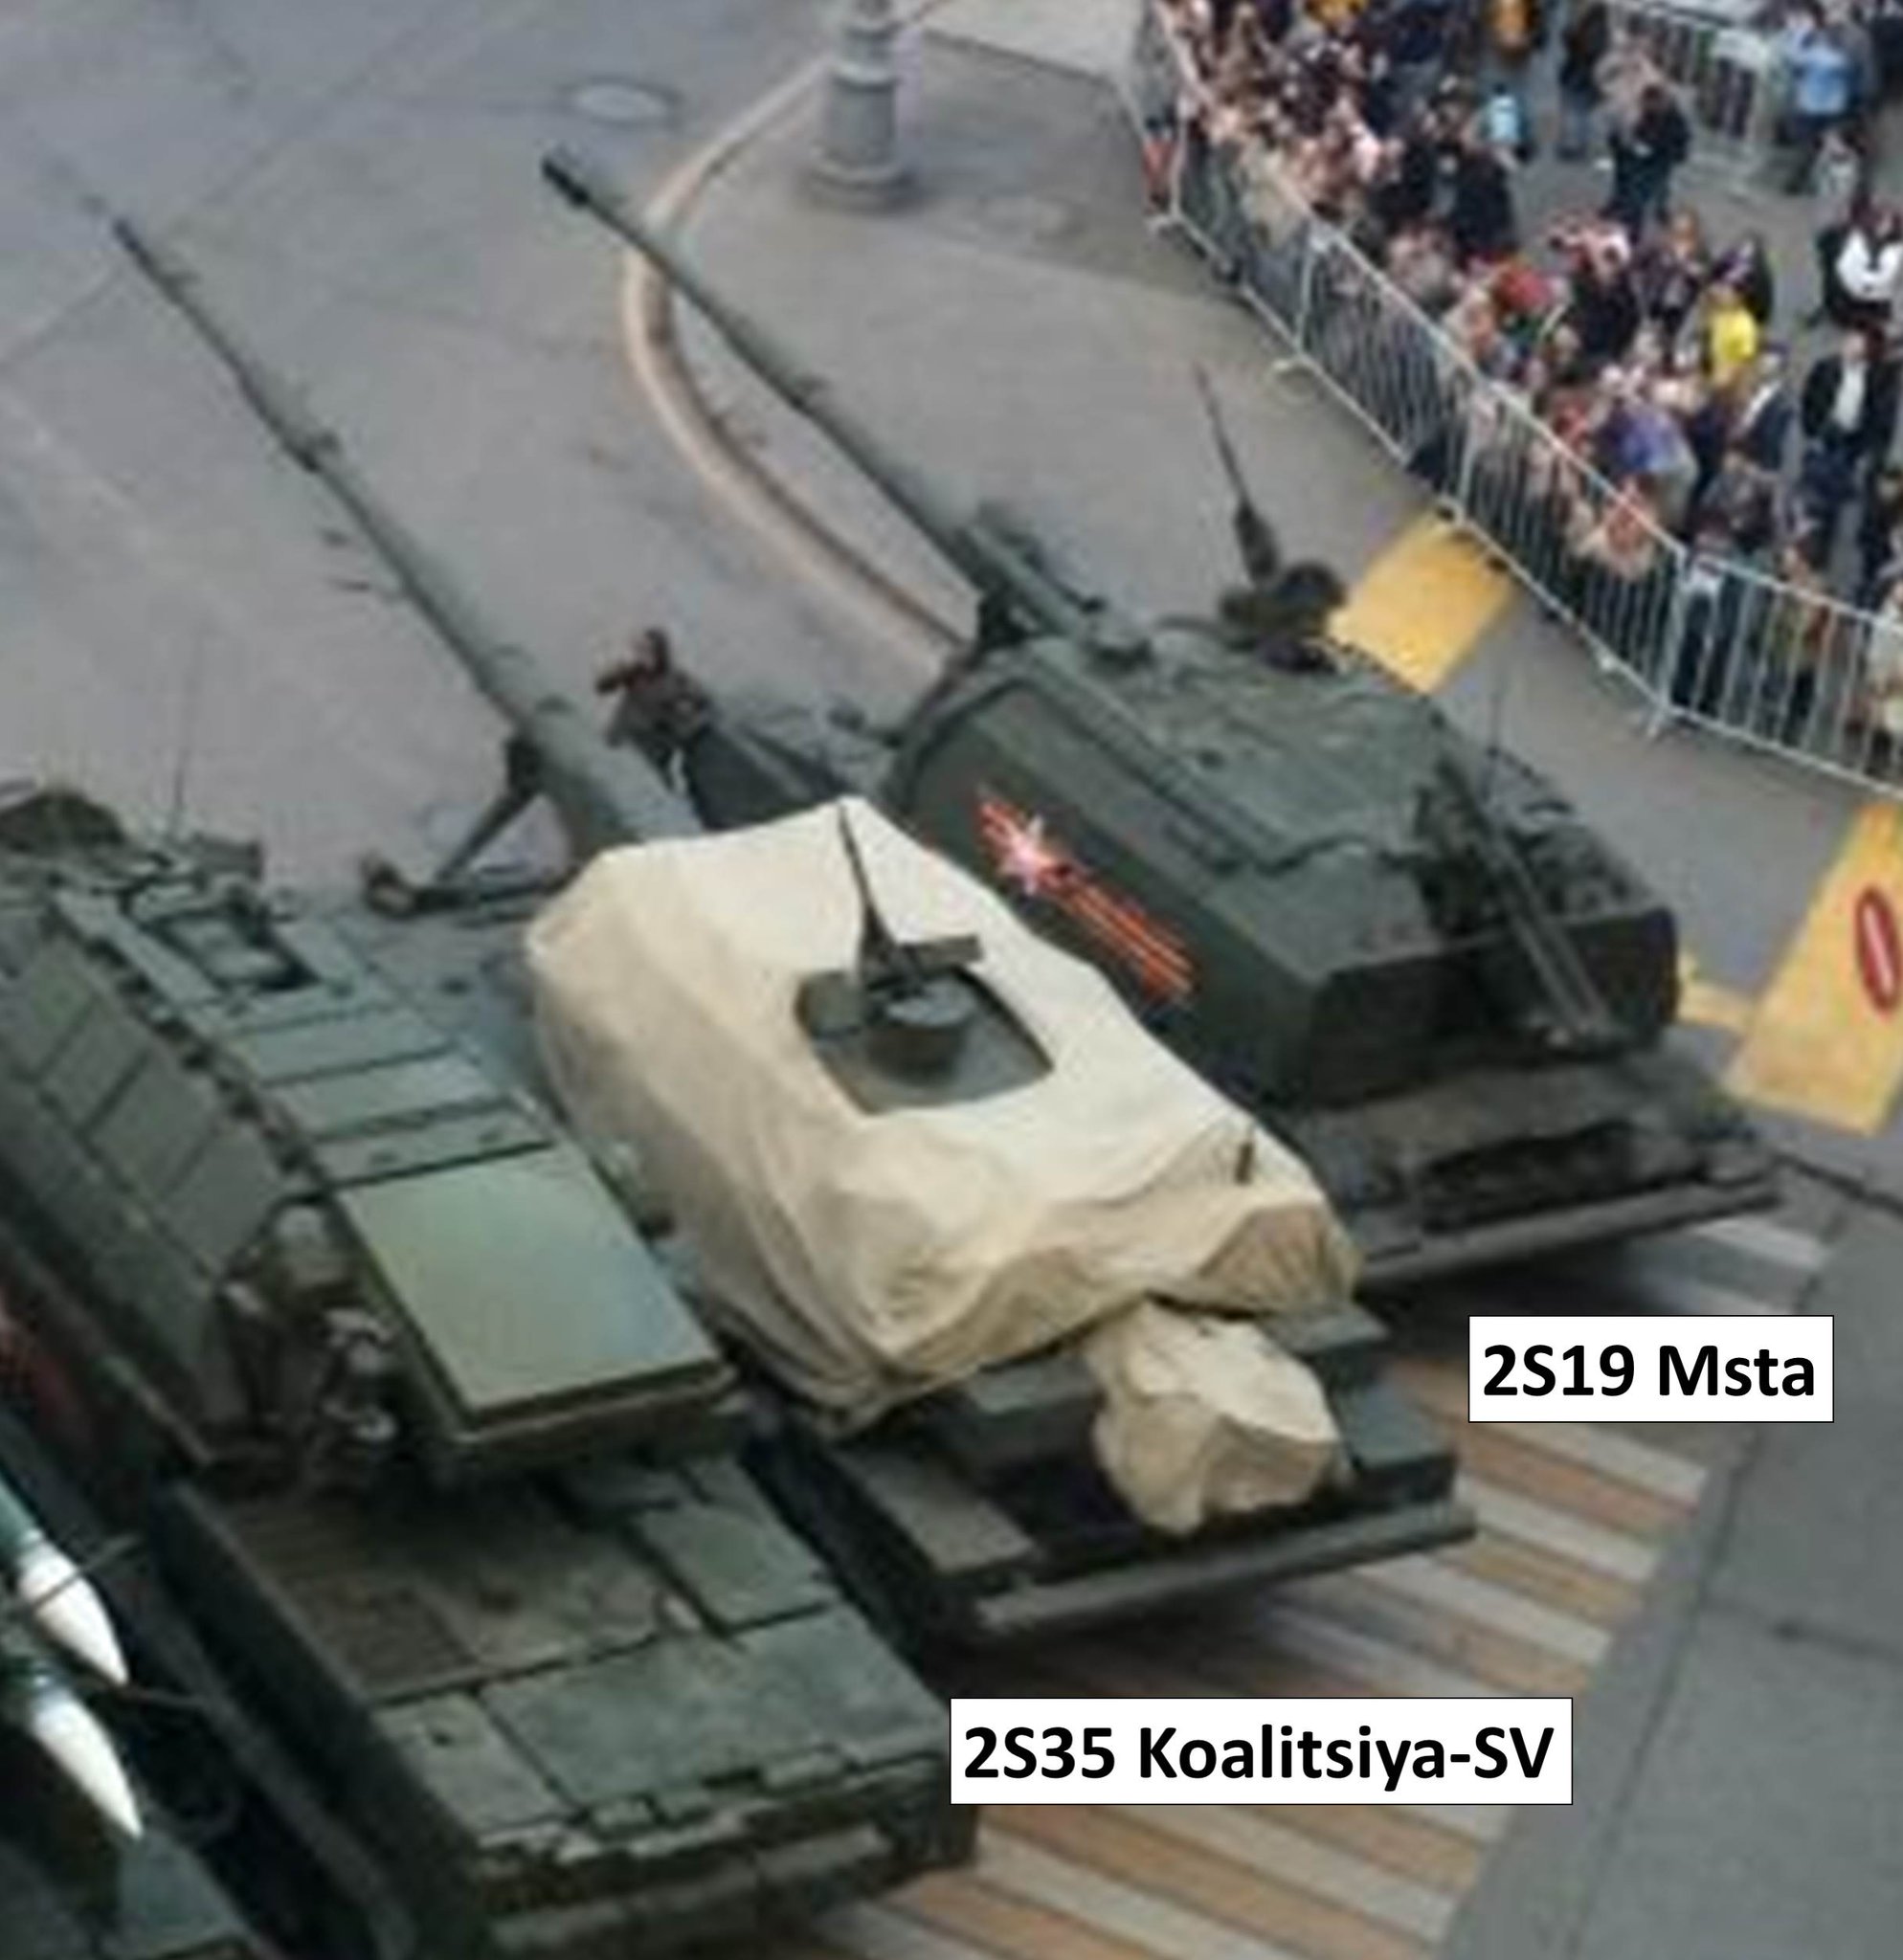 صور لنموذج من مدفع 2S35 Koalitsiya الروسي الذاتي الحركه  CD1fCzKWEAM7S1V